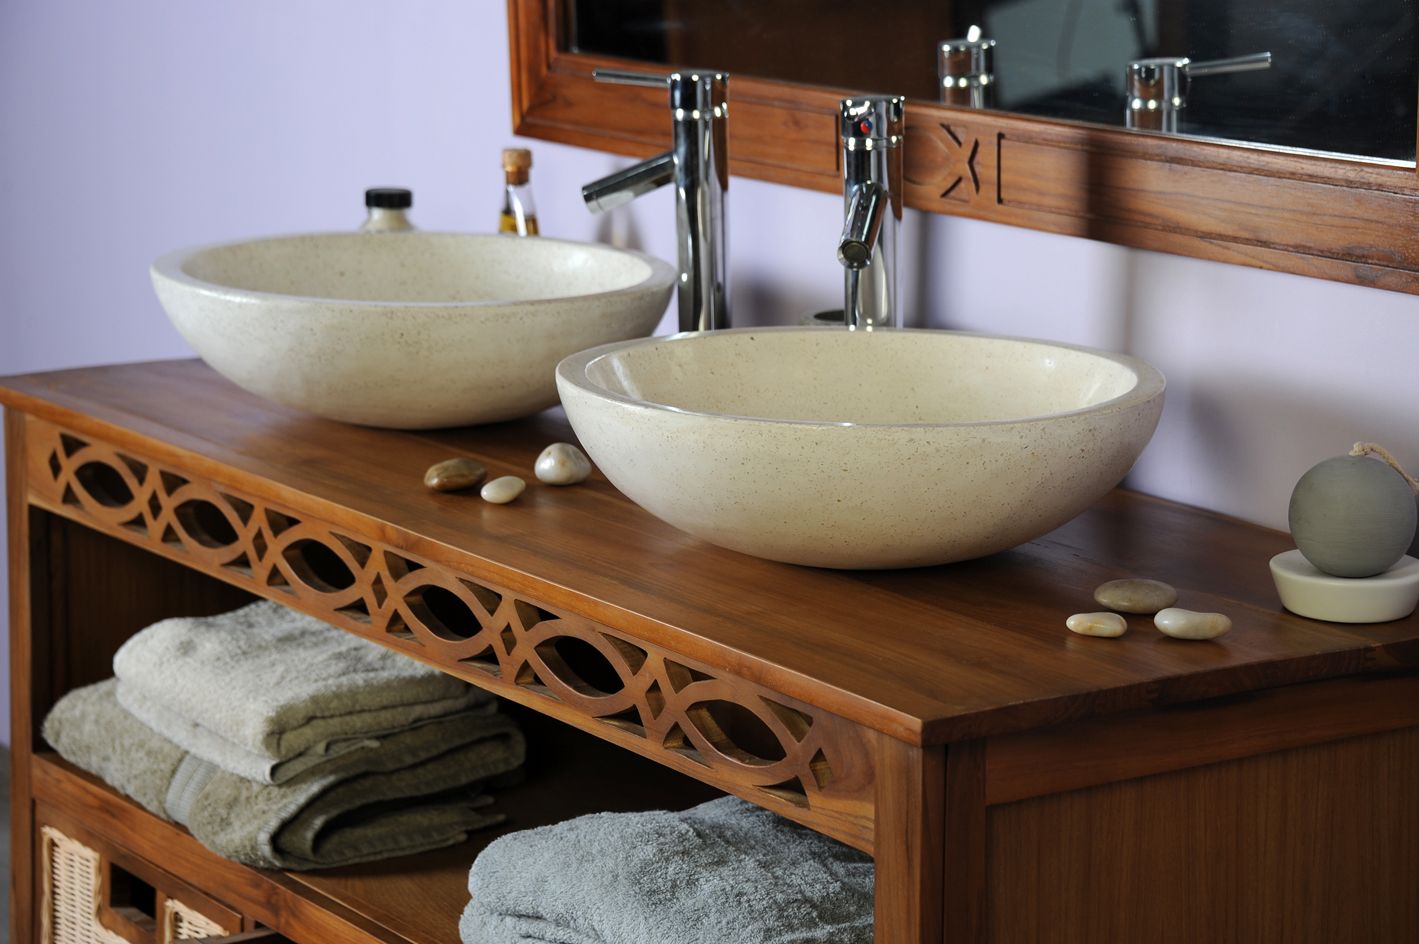 Salle de bains en teck massif et vasque en terrazo ivoire à petit prix.